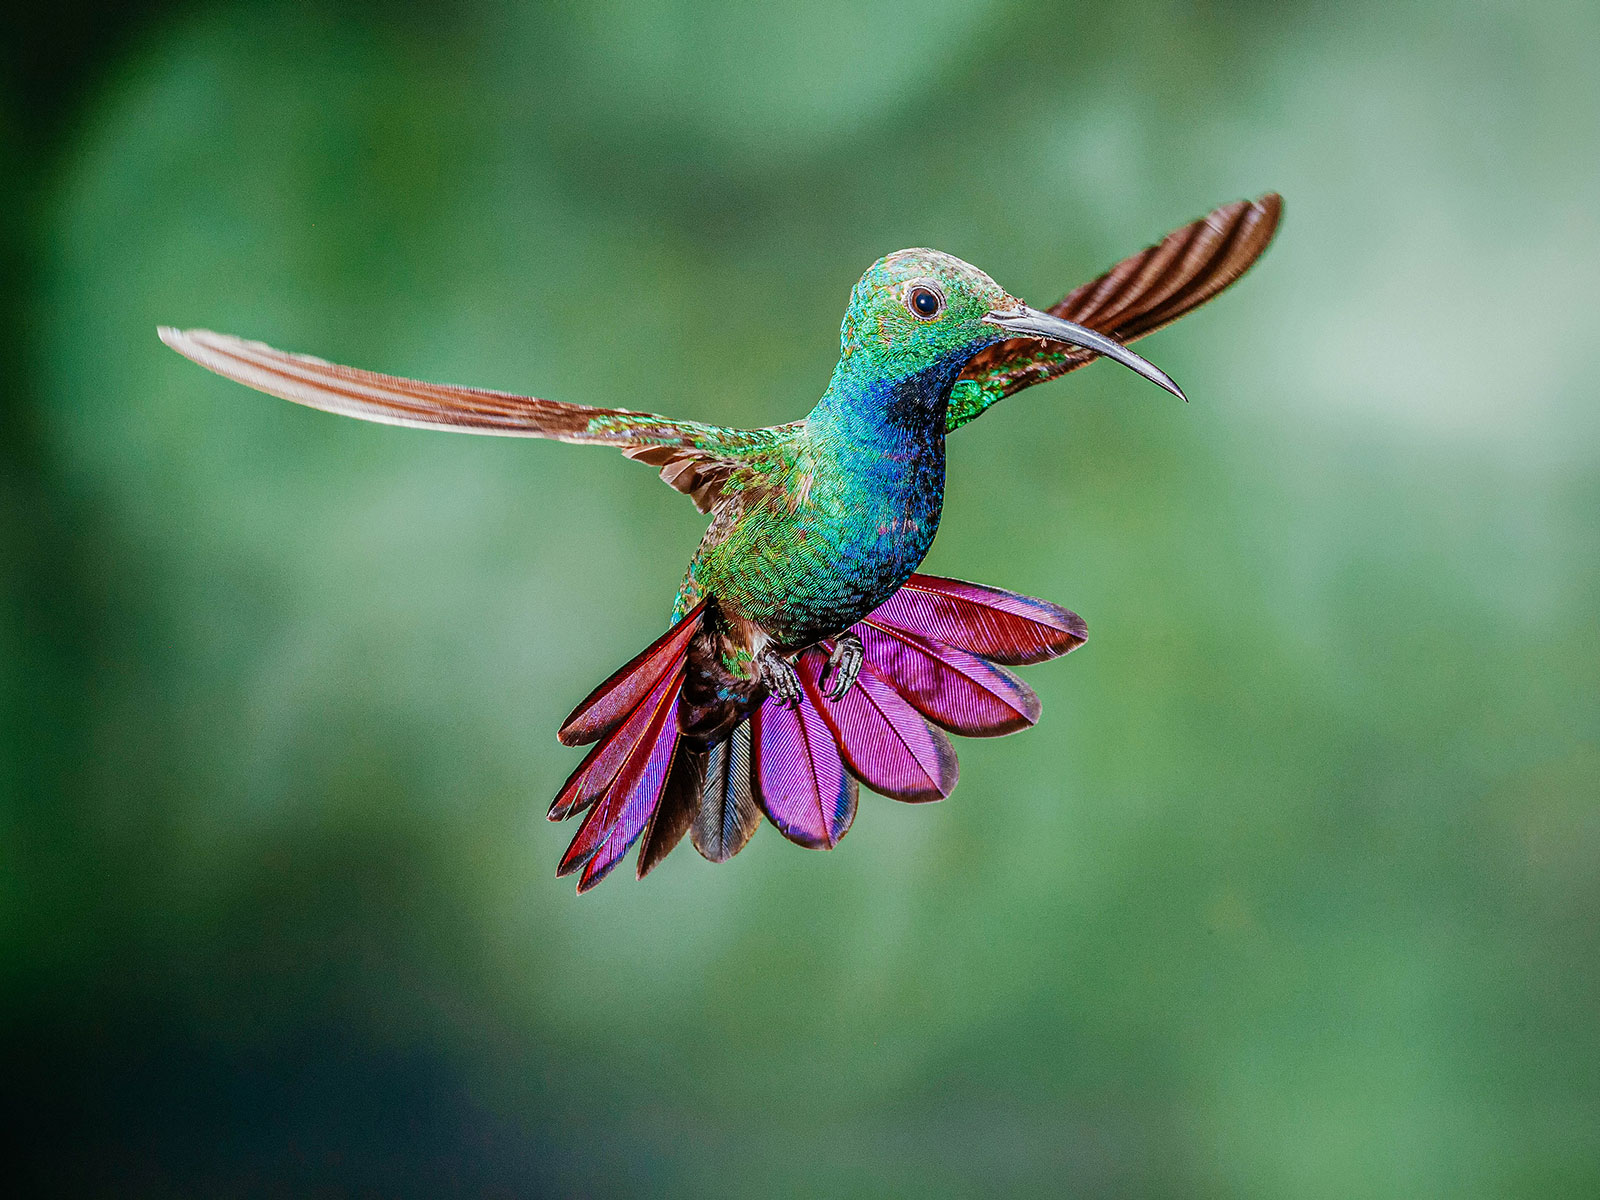 Green-breasted mango hummingbird in flight